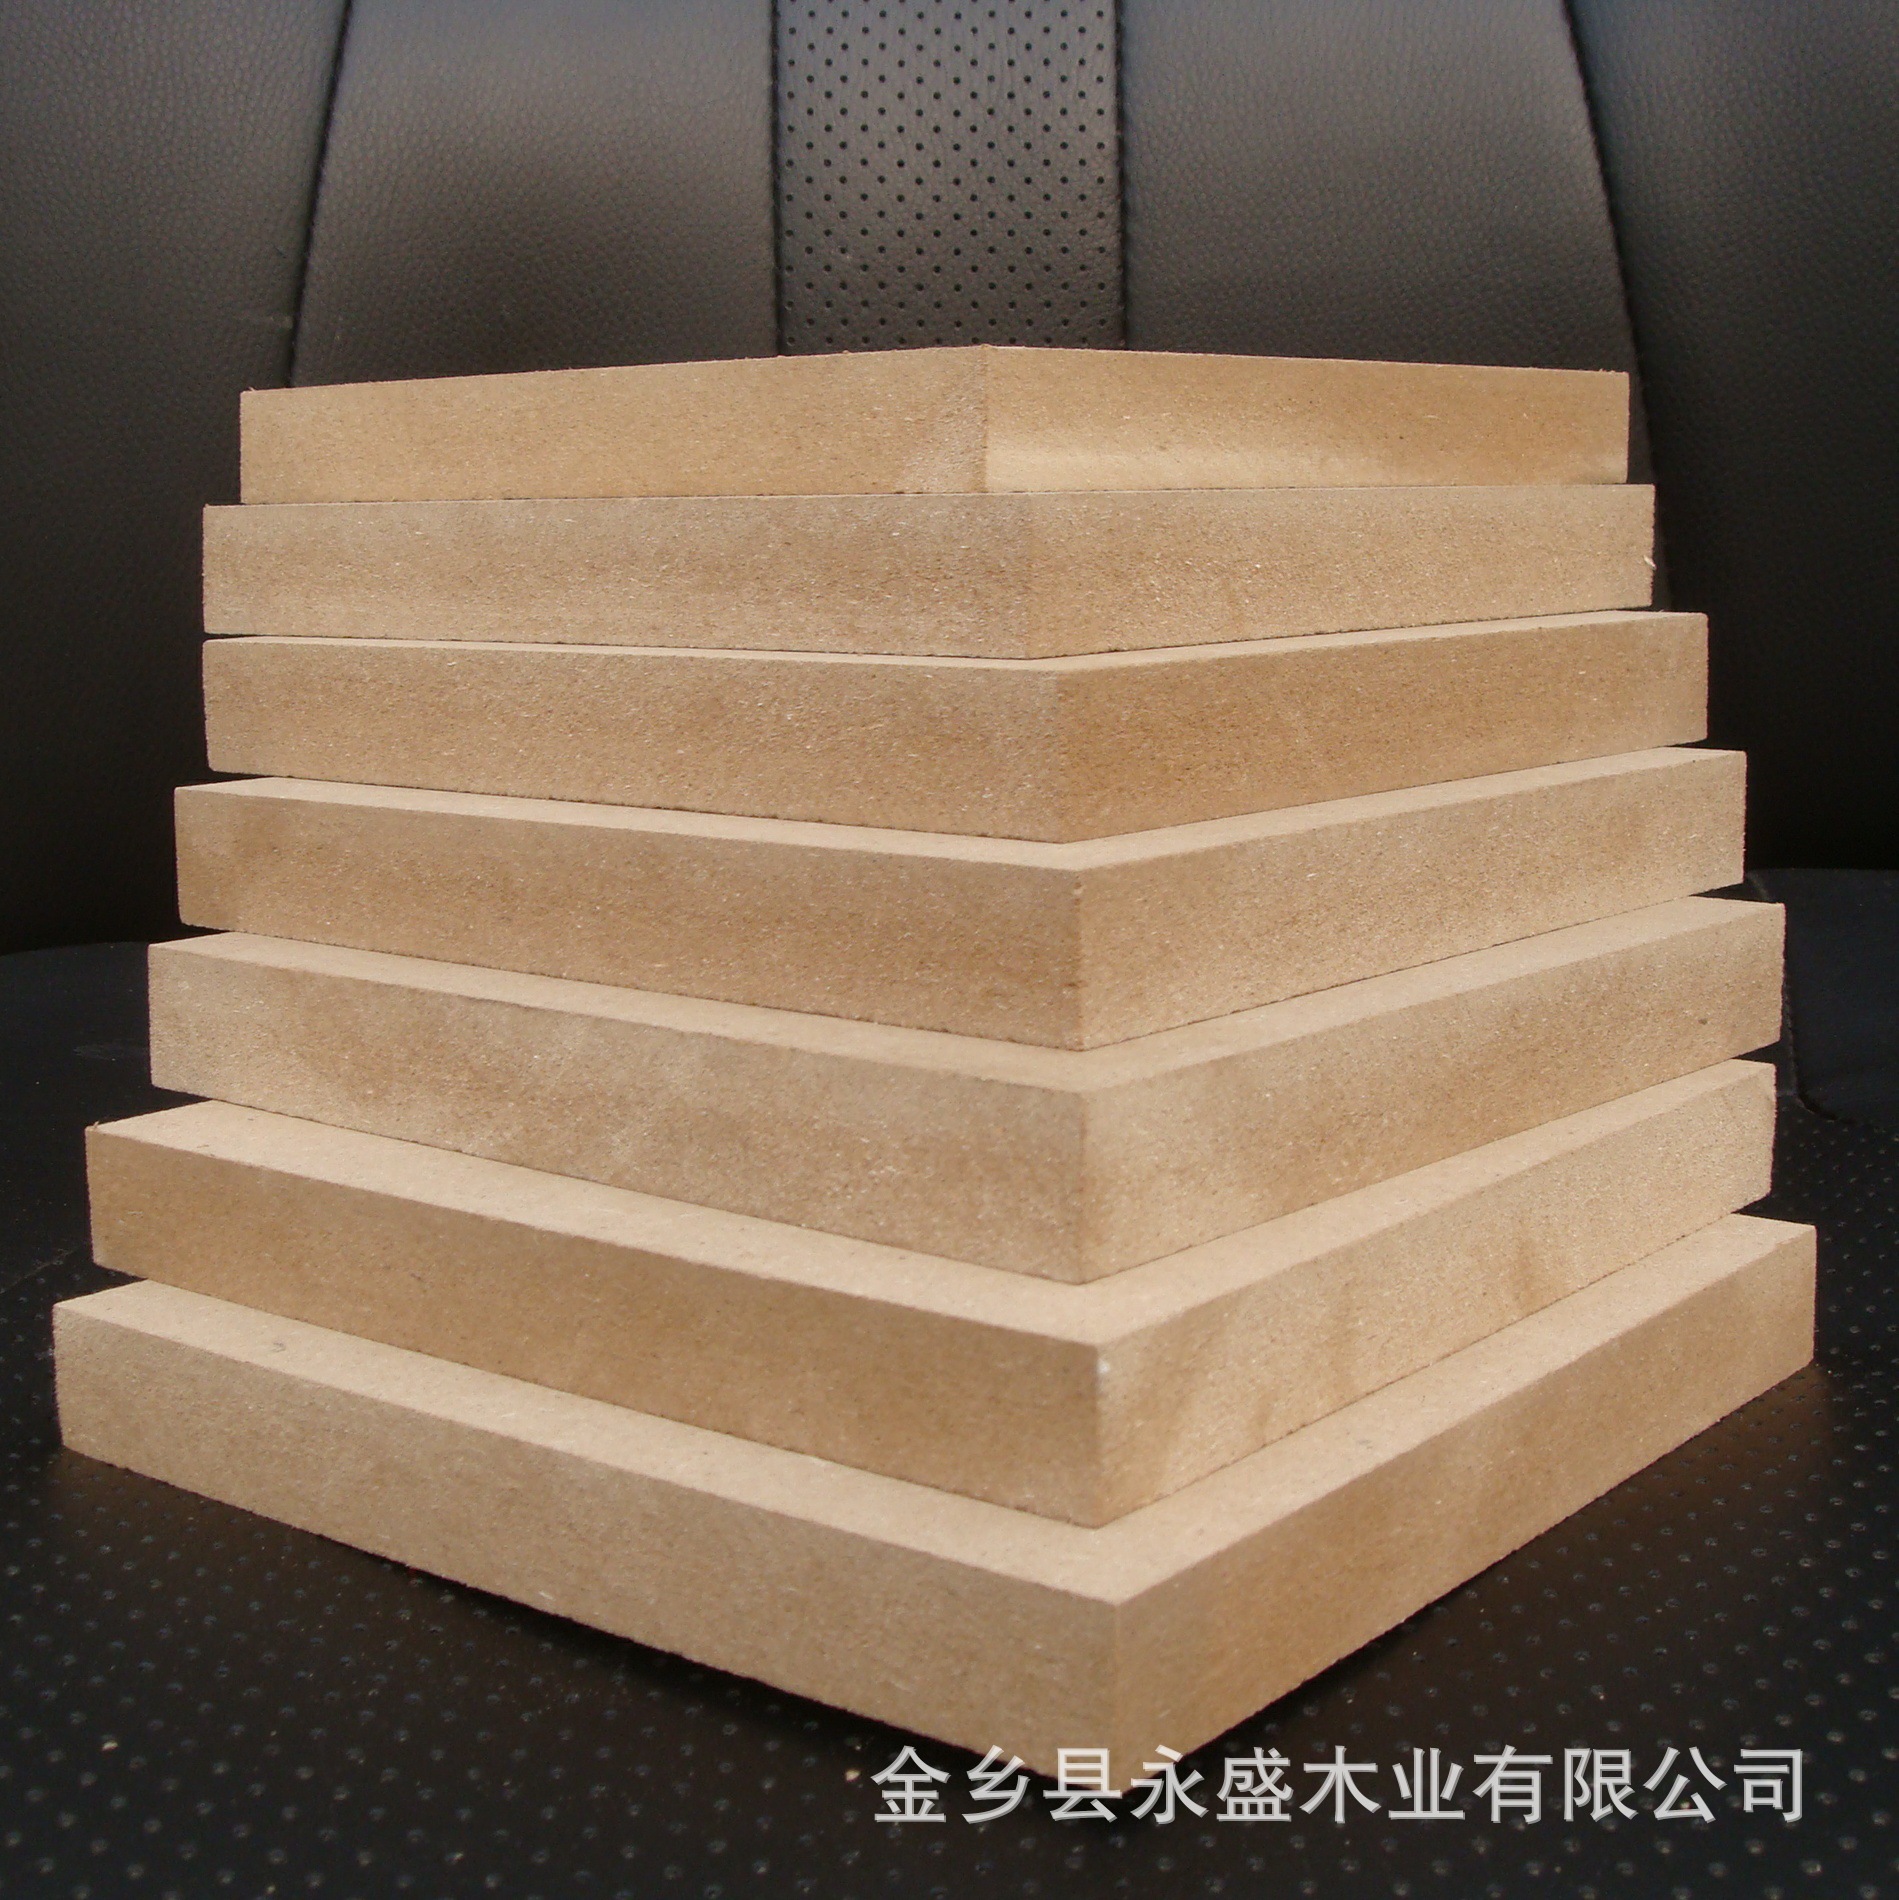 【厂家供应】中密度纤维板,mdf,木板材